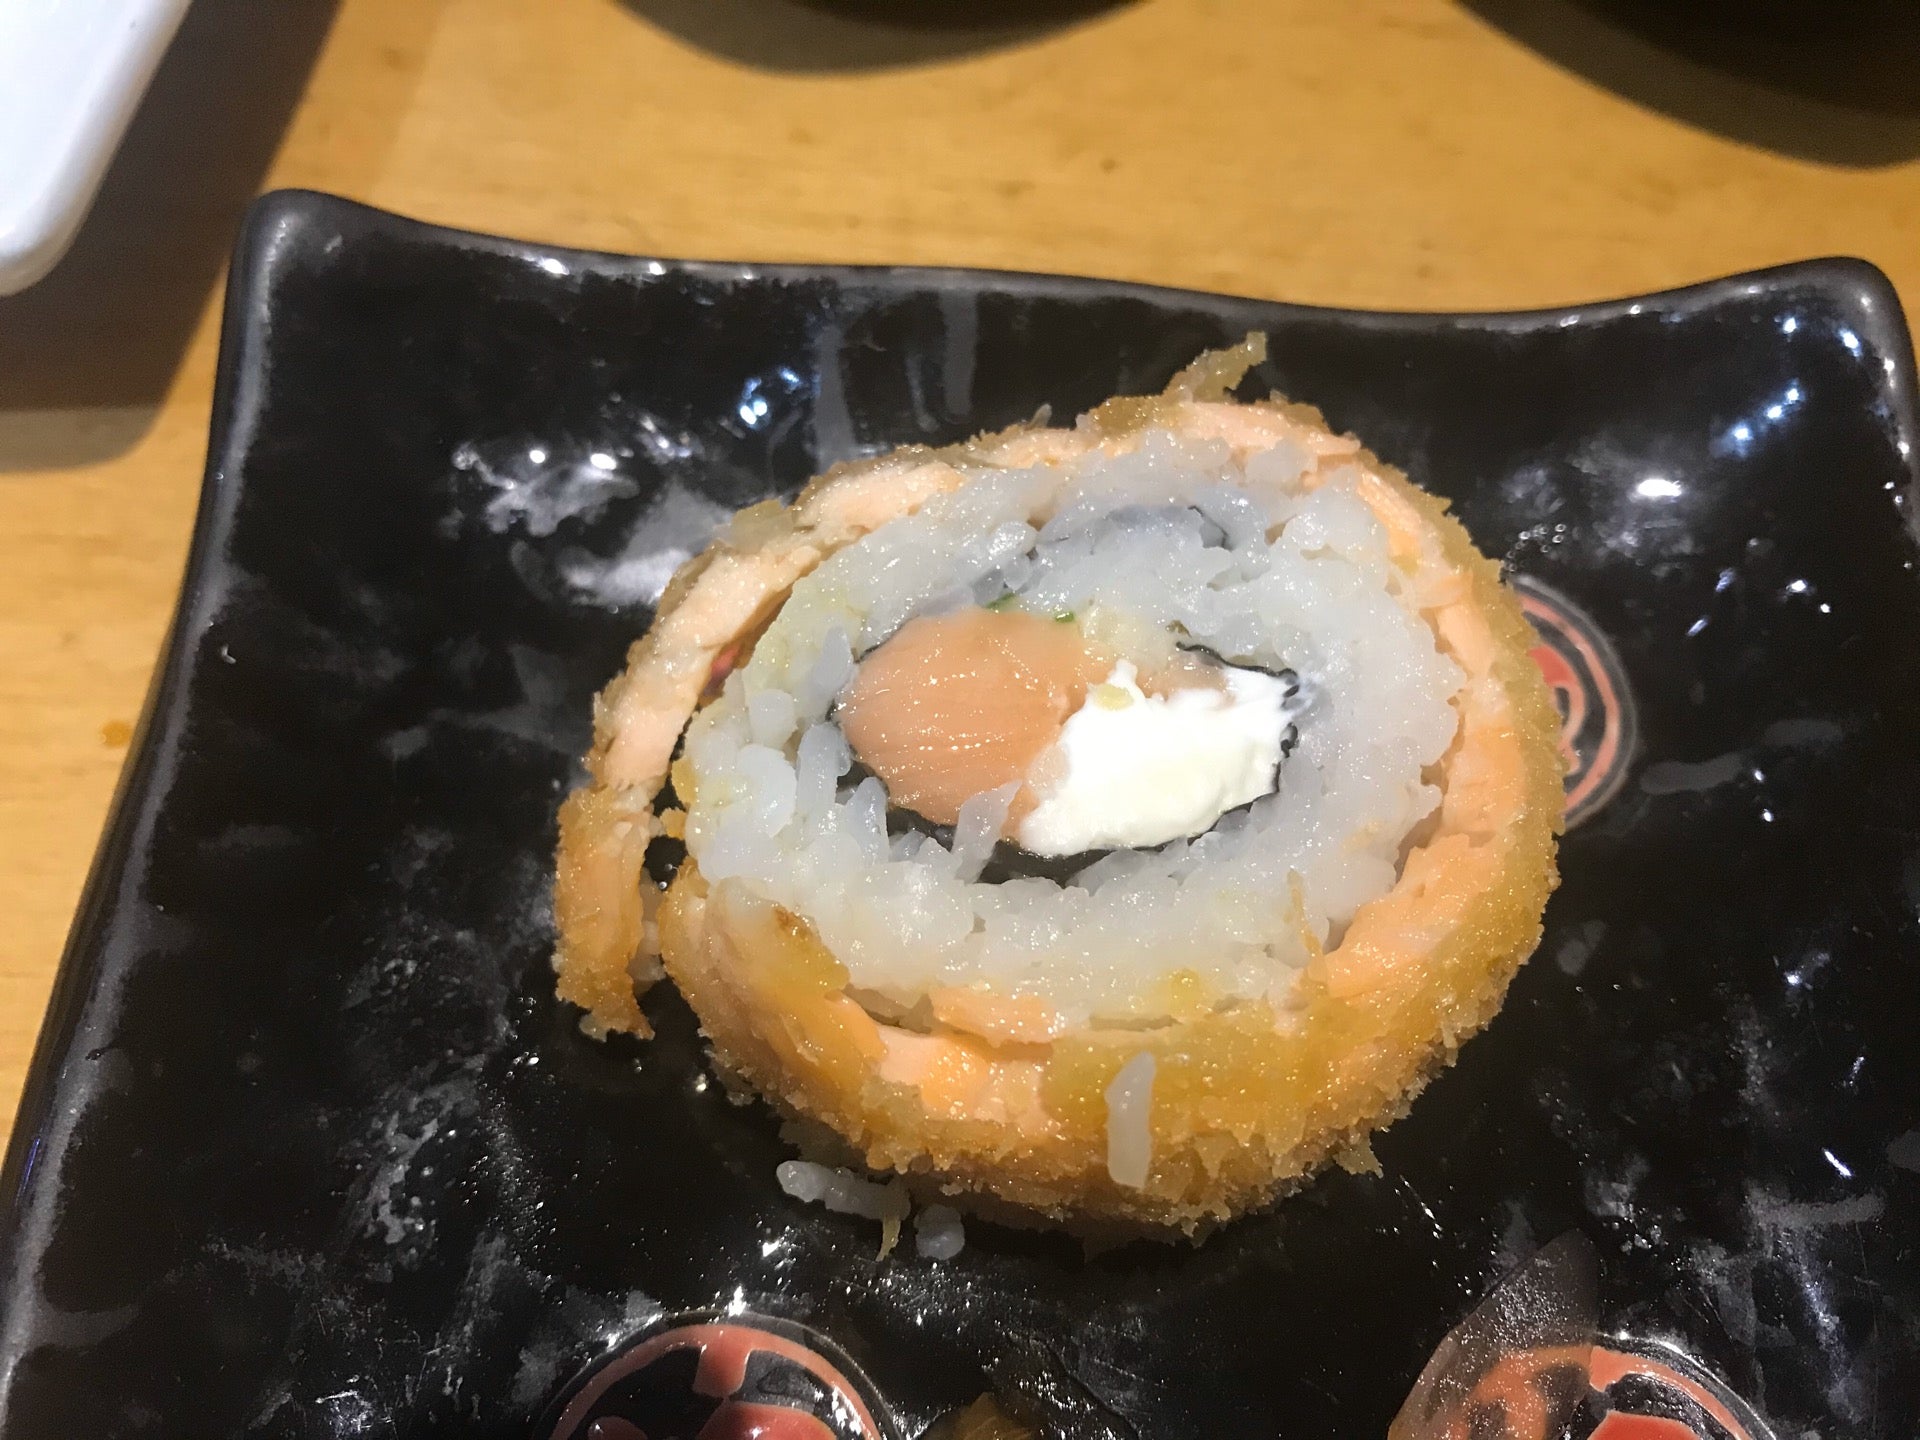 Duri Sushi